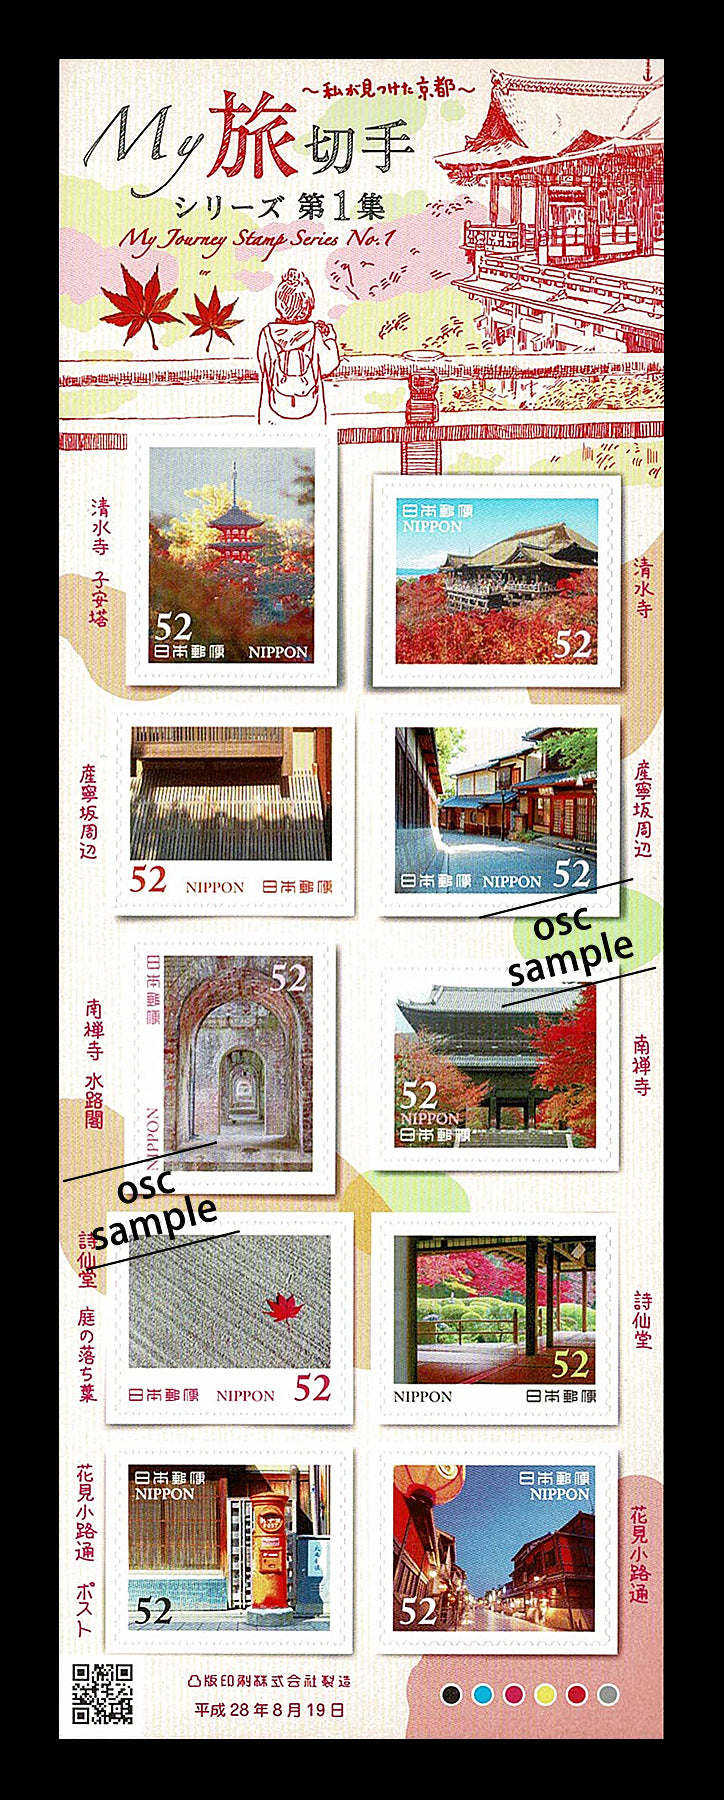 Kyoto (My Journey Stamp Series No.1) 京都 (52 yen)